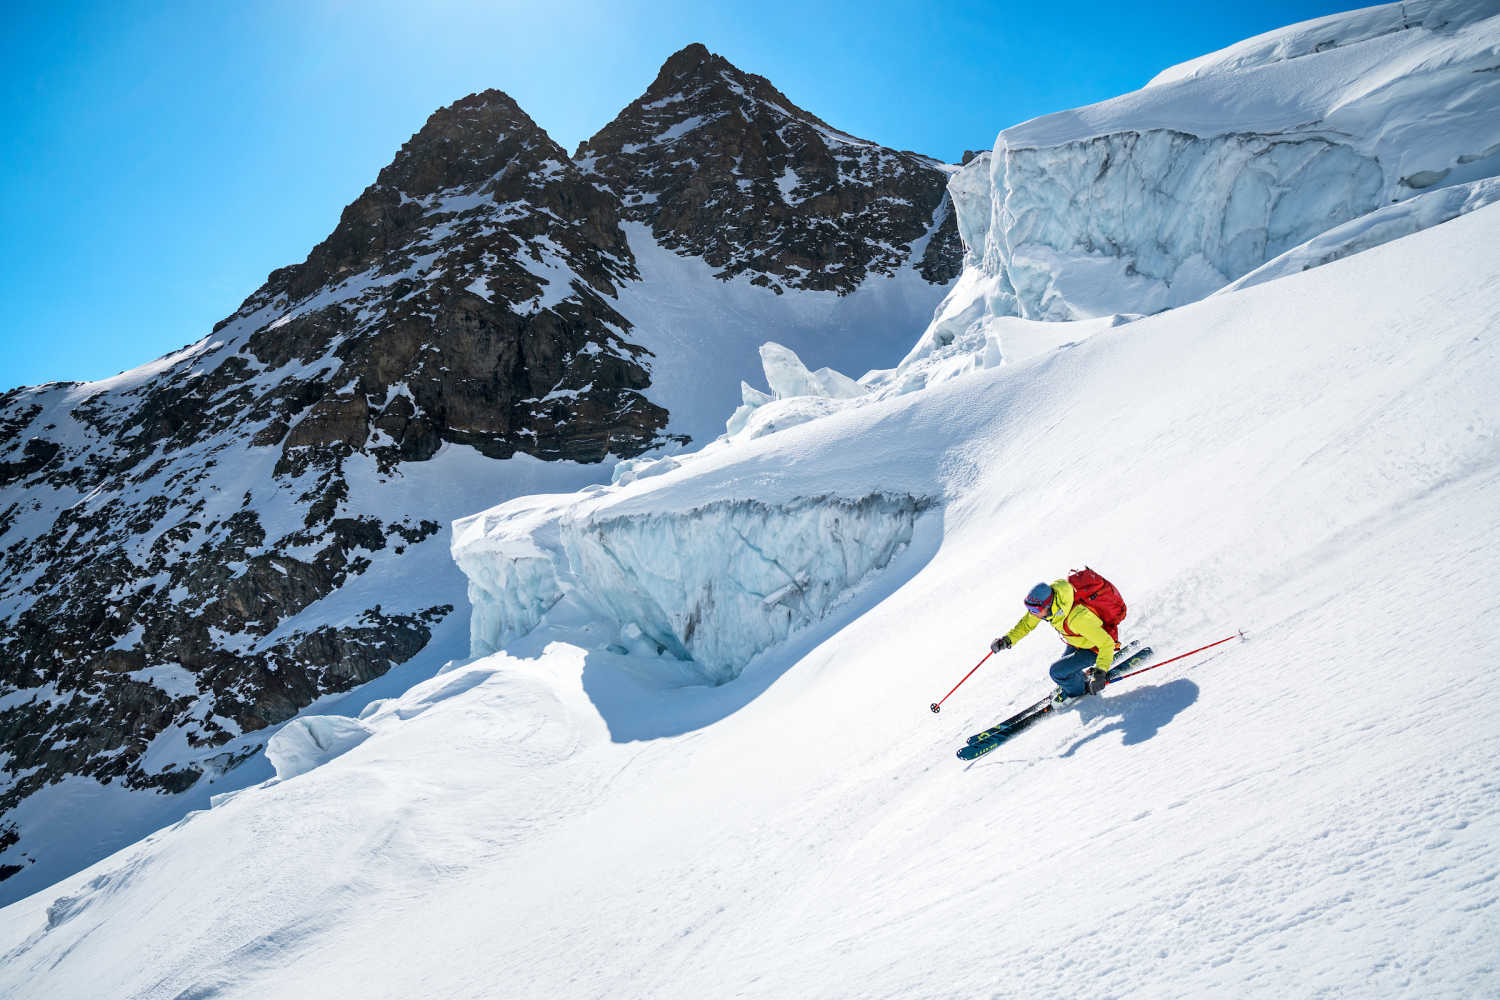 Rosenlouwigletscher ski